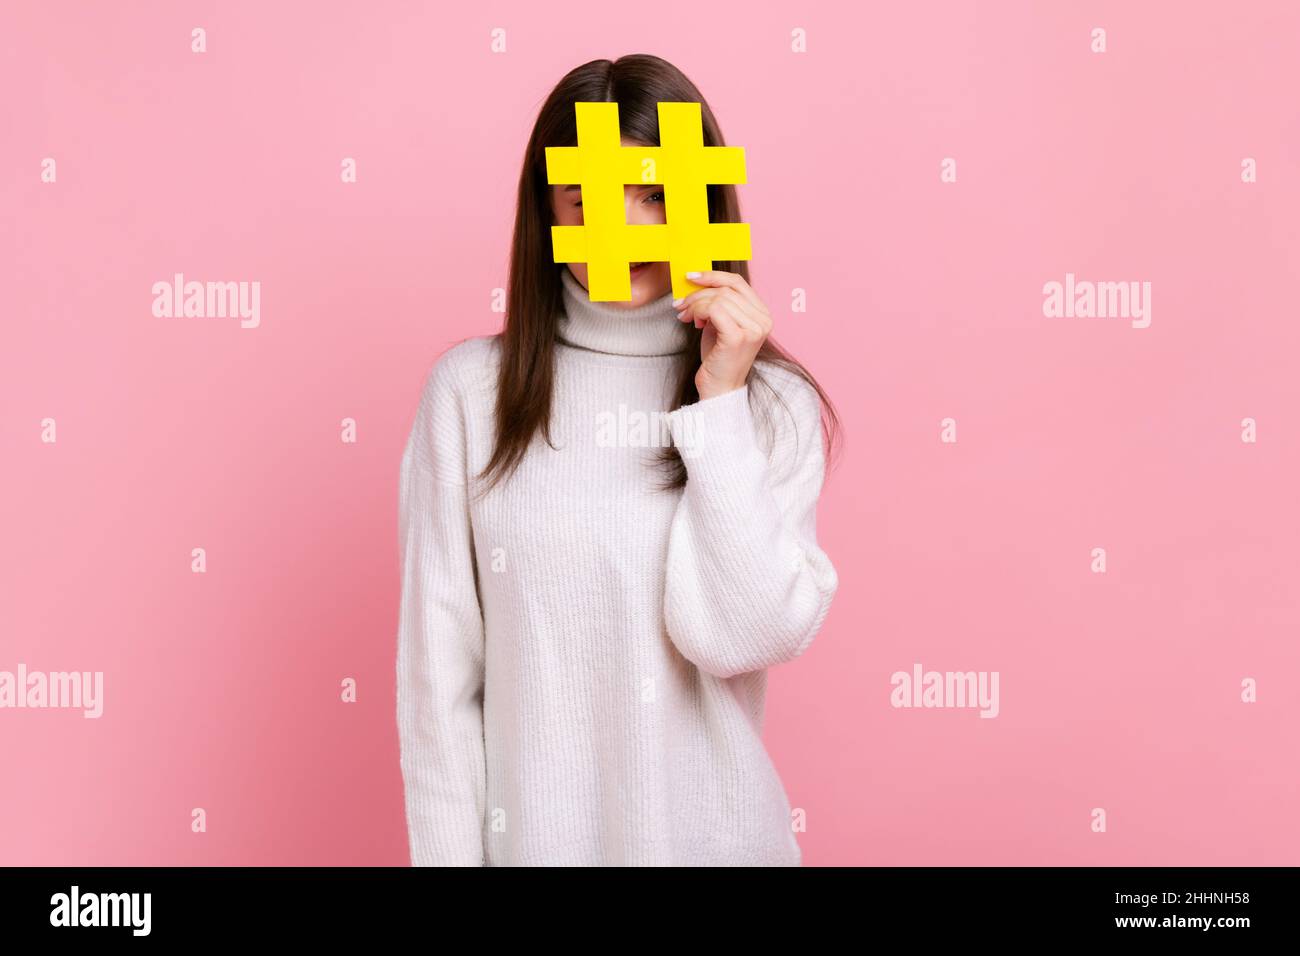 Femme couvrant le visage avec le symbole hashtag des médias sociaux, recommandant de suivre le contenu à la mode, blog, portant blanc style décontracté pull.Studio d'intérieur isolé sur fond rose. Banque D'Images